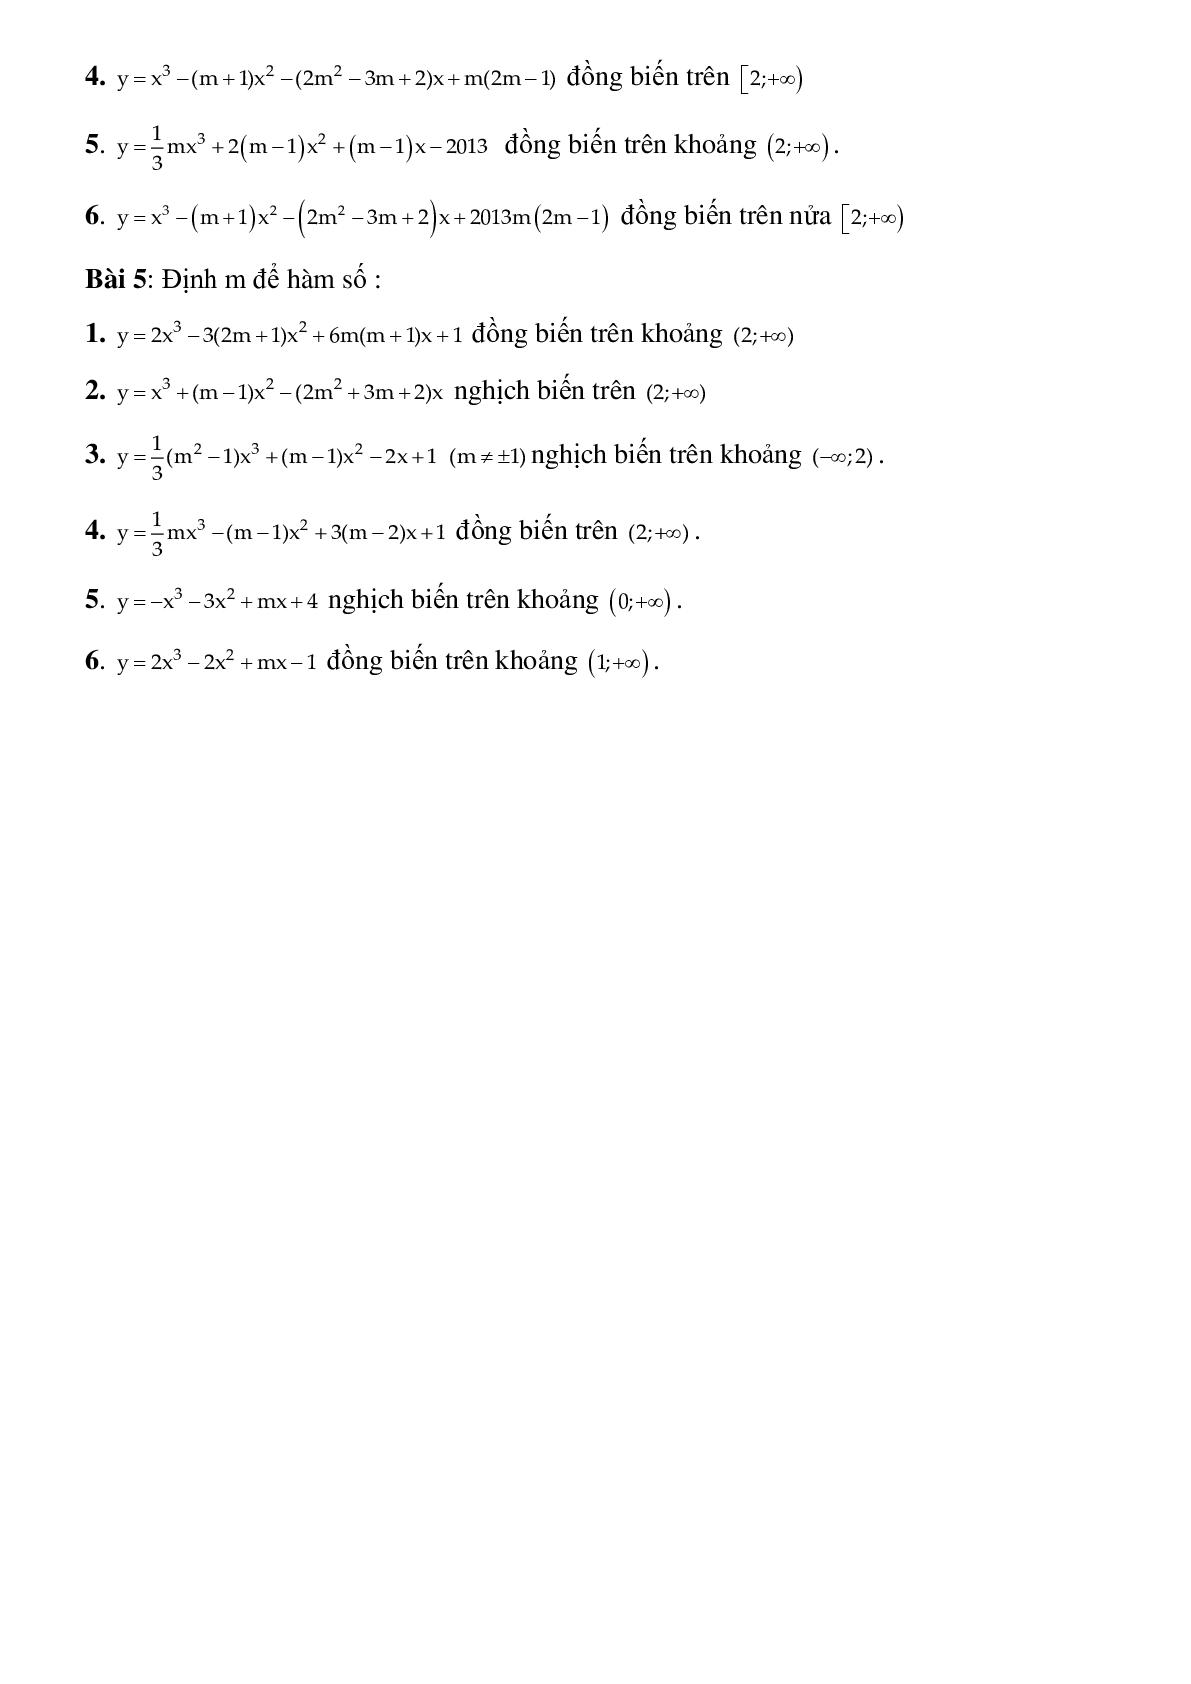 Dạng bài tập Tìm tham số m để hàm số đơn điệu trên khoảng K cho trước (trang 4)